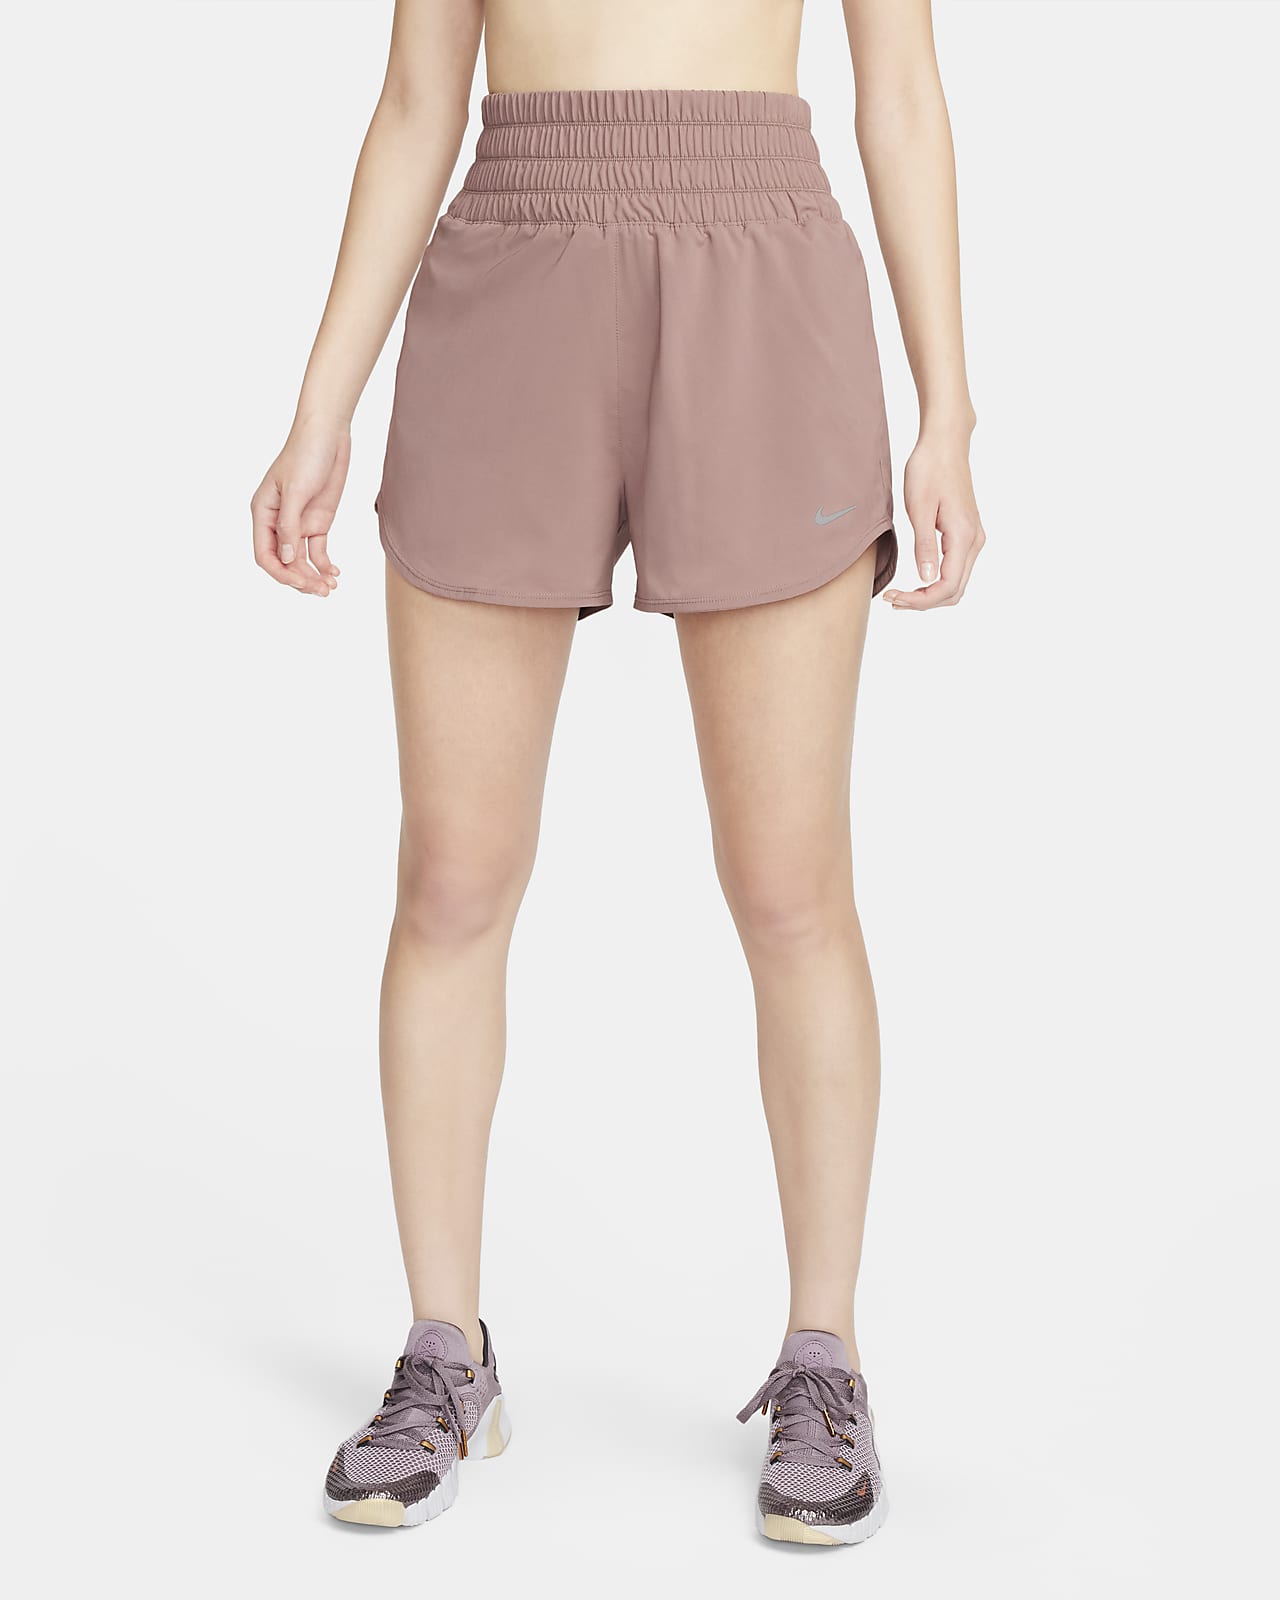 Shorts con forro de ropa interior Dri-FIT de tiro ultraalto de 8 cm para mujer Nike One